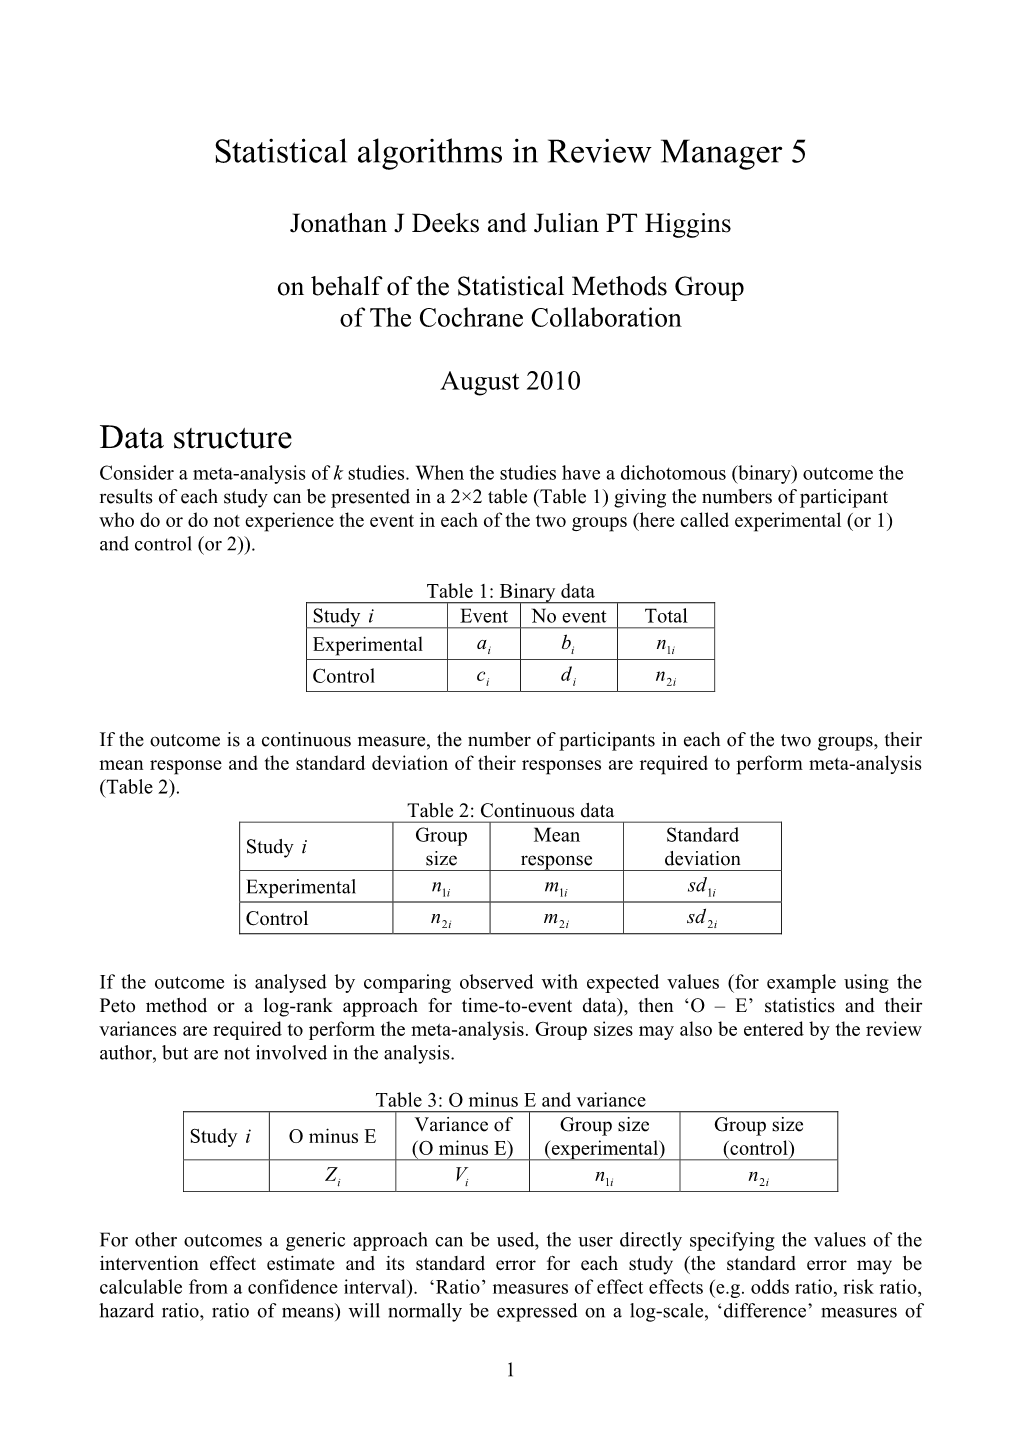 Statistical Methods Programmed in Metaview